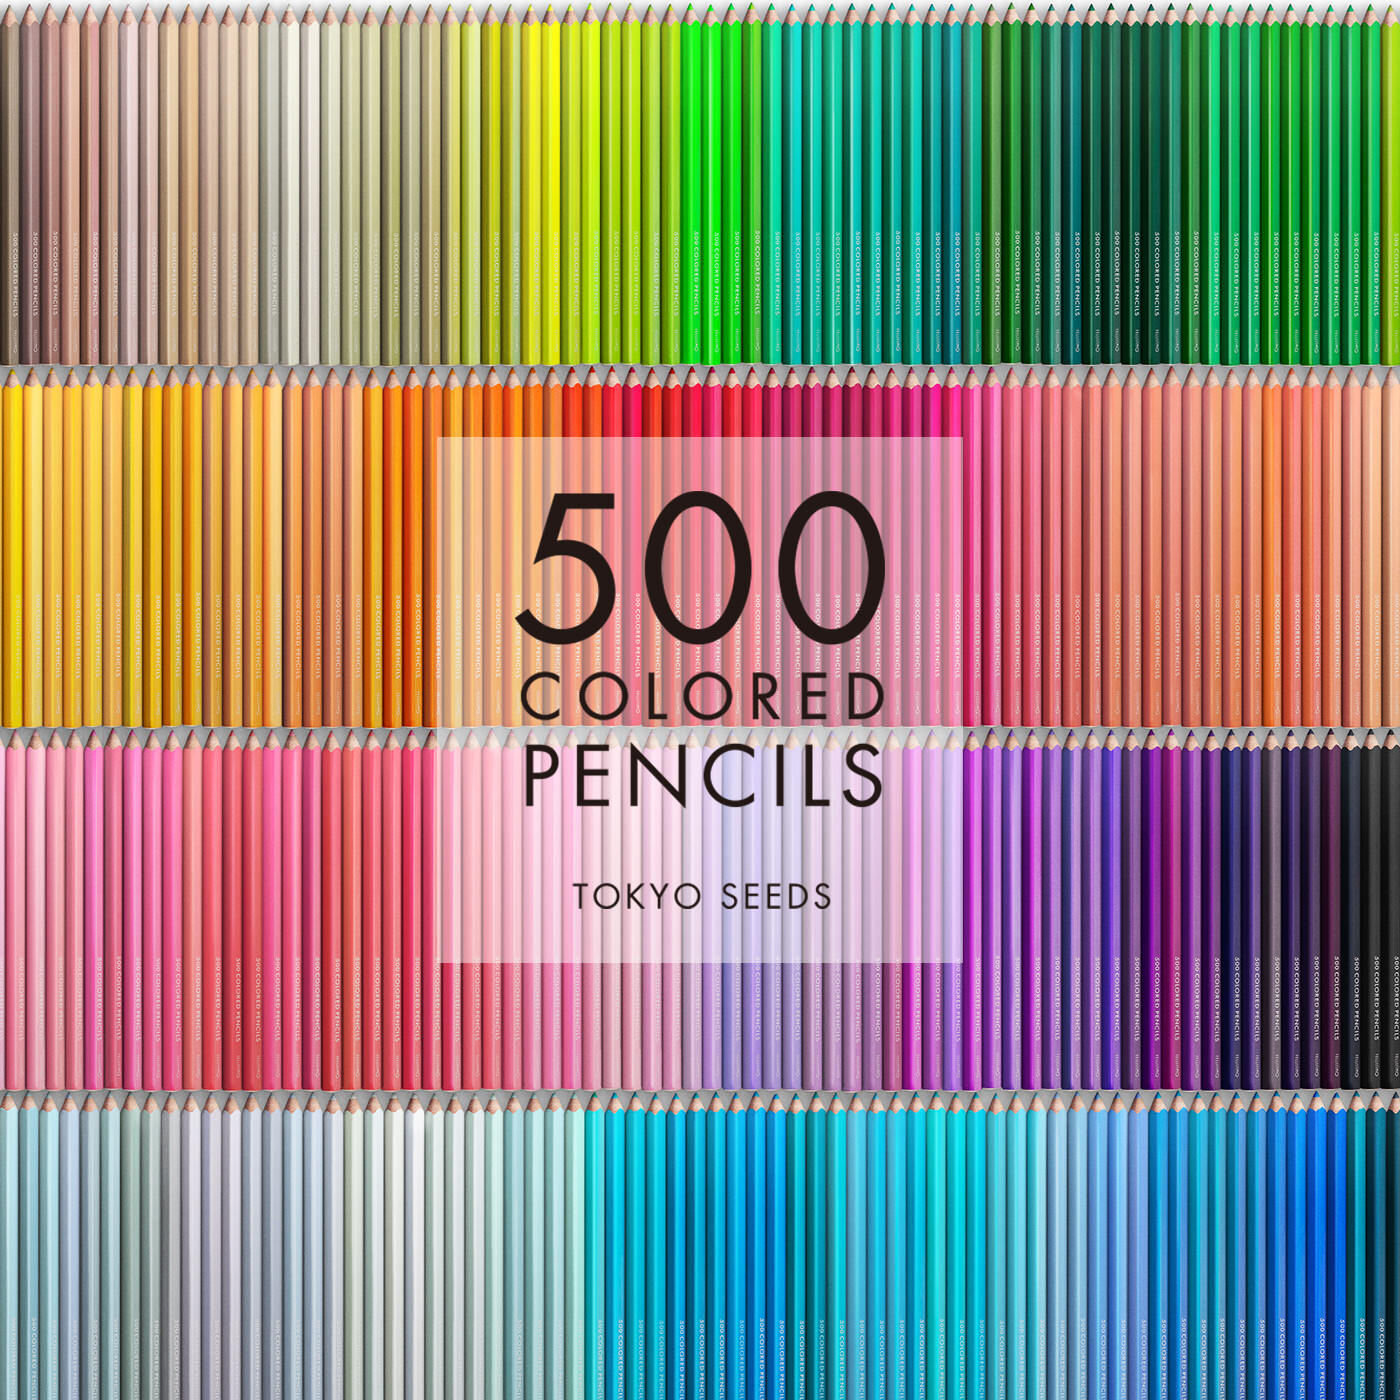 Real Stock|【425/500 MERRY MATCHA】500色の色えんぴつ TOKYO SEEDS|1992年、世界初の「500色」という膨大な色数の色えんぴつが誕生して以来、その販売数は発売当初から合わせると、世界55ヵ国10万セット以上。今回、メイド・イン・ジャパンにこだわり、すべてが新しく生まれ変わって登場しました。